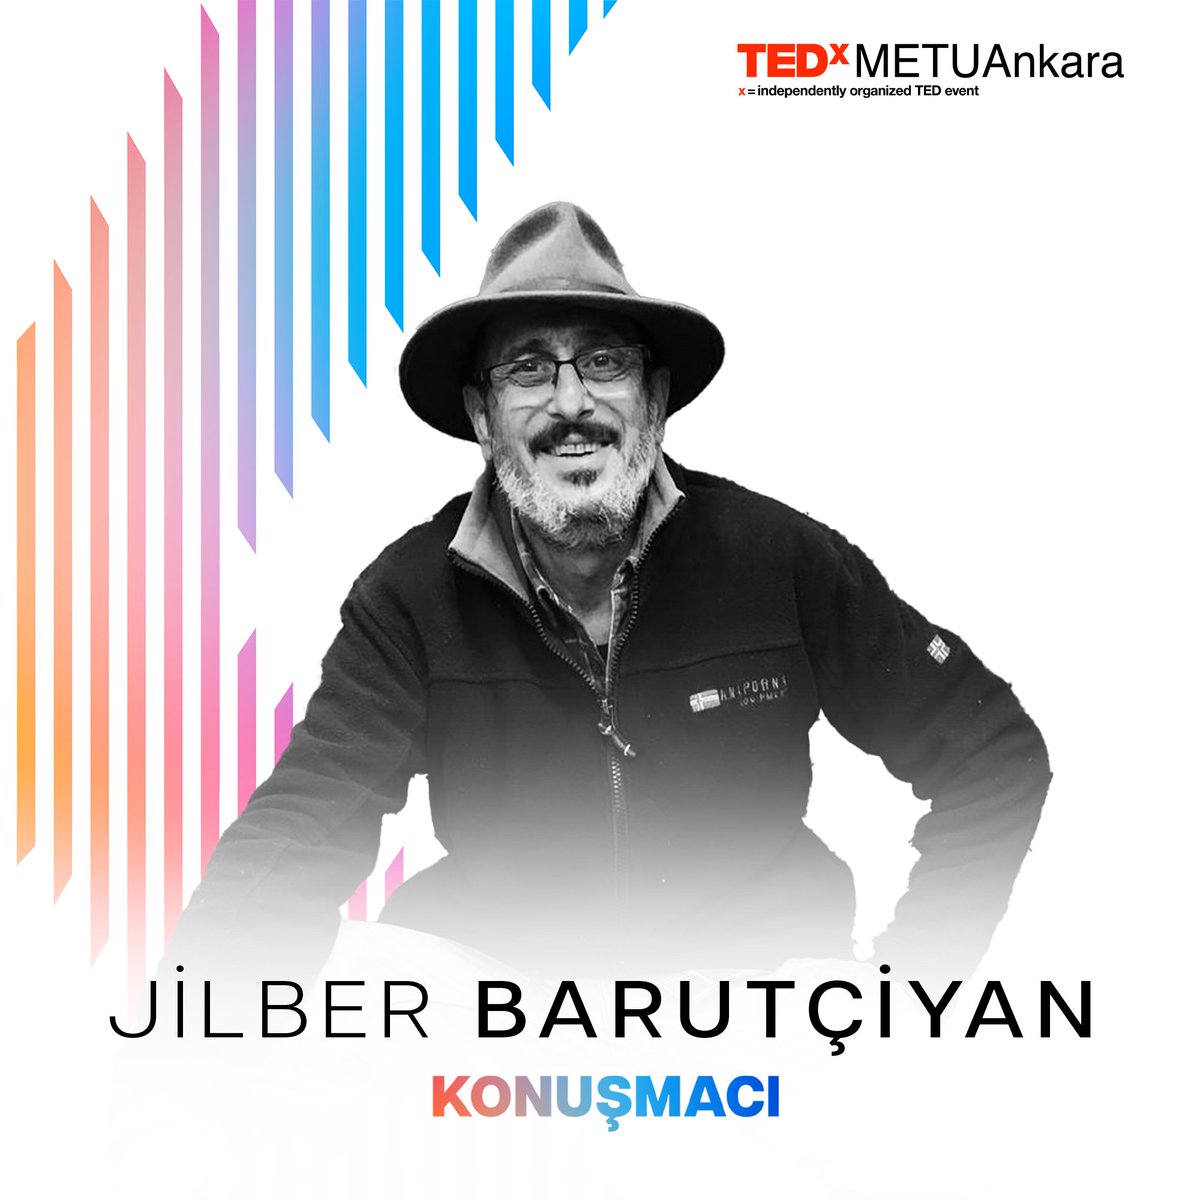 Jilber Barutçiyan, bu sene TEDxMETUAnkara sahnesinde sizlerle!
#tedxmetuankara #tedxtalks #tedtalks #ayna #odtü #paylaşmayadeğerfikirler #ideasworthspreading